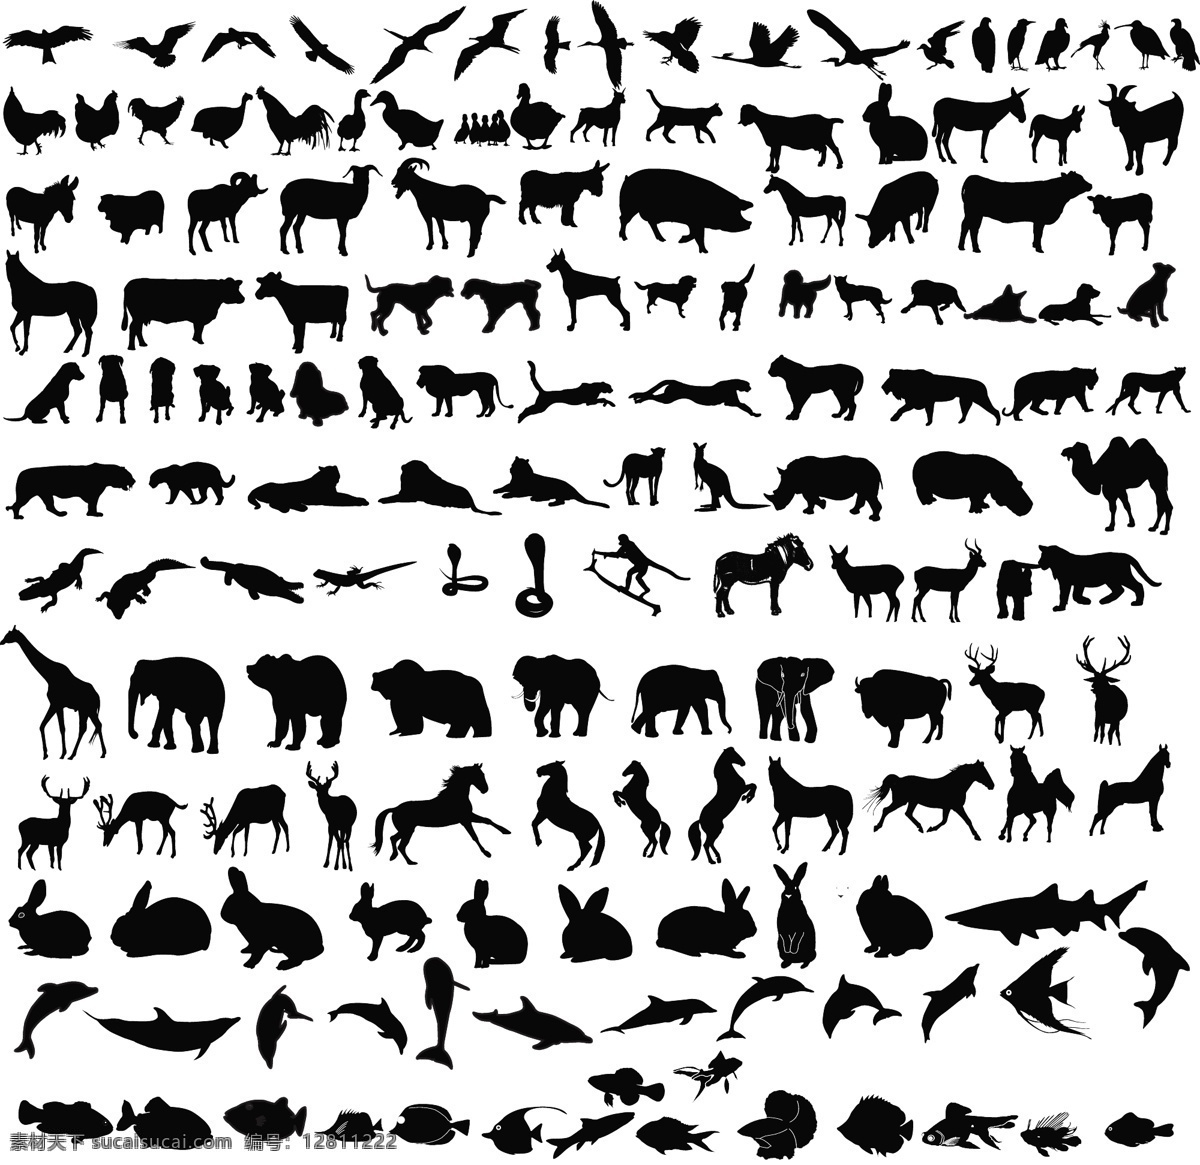 动物黑白剪影 动物 森林动物图片 森林动物 动物剪影 大象 长颈鹿 各种动物 共享图